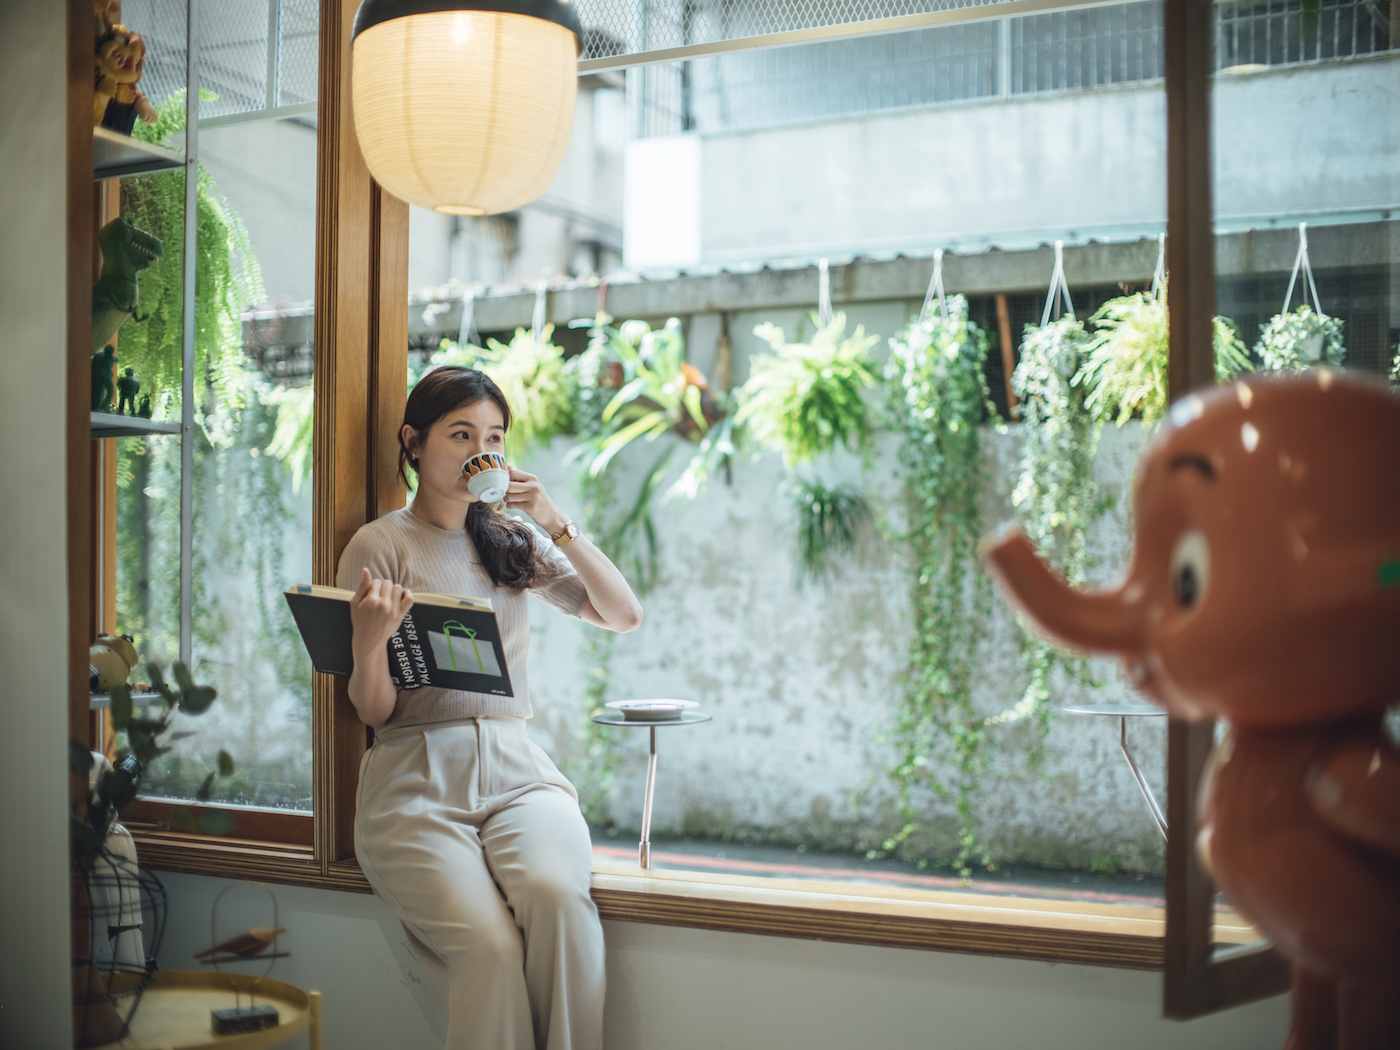 「Goro Goro Coffee」名字的靈感，來自於日語中表示「悠閒放鬆」的「ゴロゴロ」，張貢丸希望所有來店的客人，都能在此輕鬆地享受他們的咖啡，讓人即使有些廢，也能在這裡找到放鬆的感覺，盡情地做自己